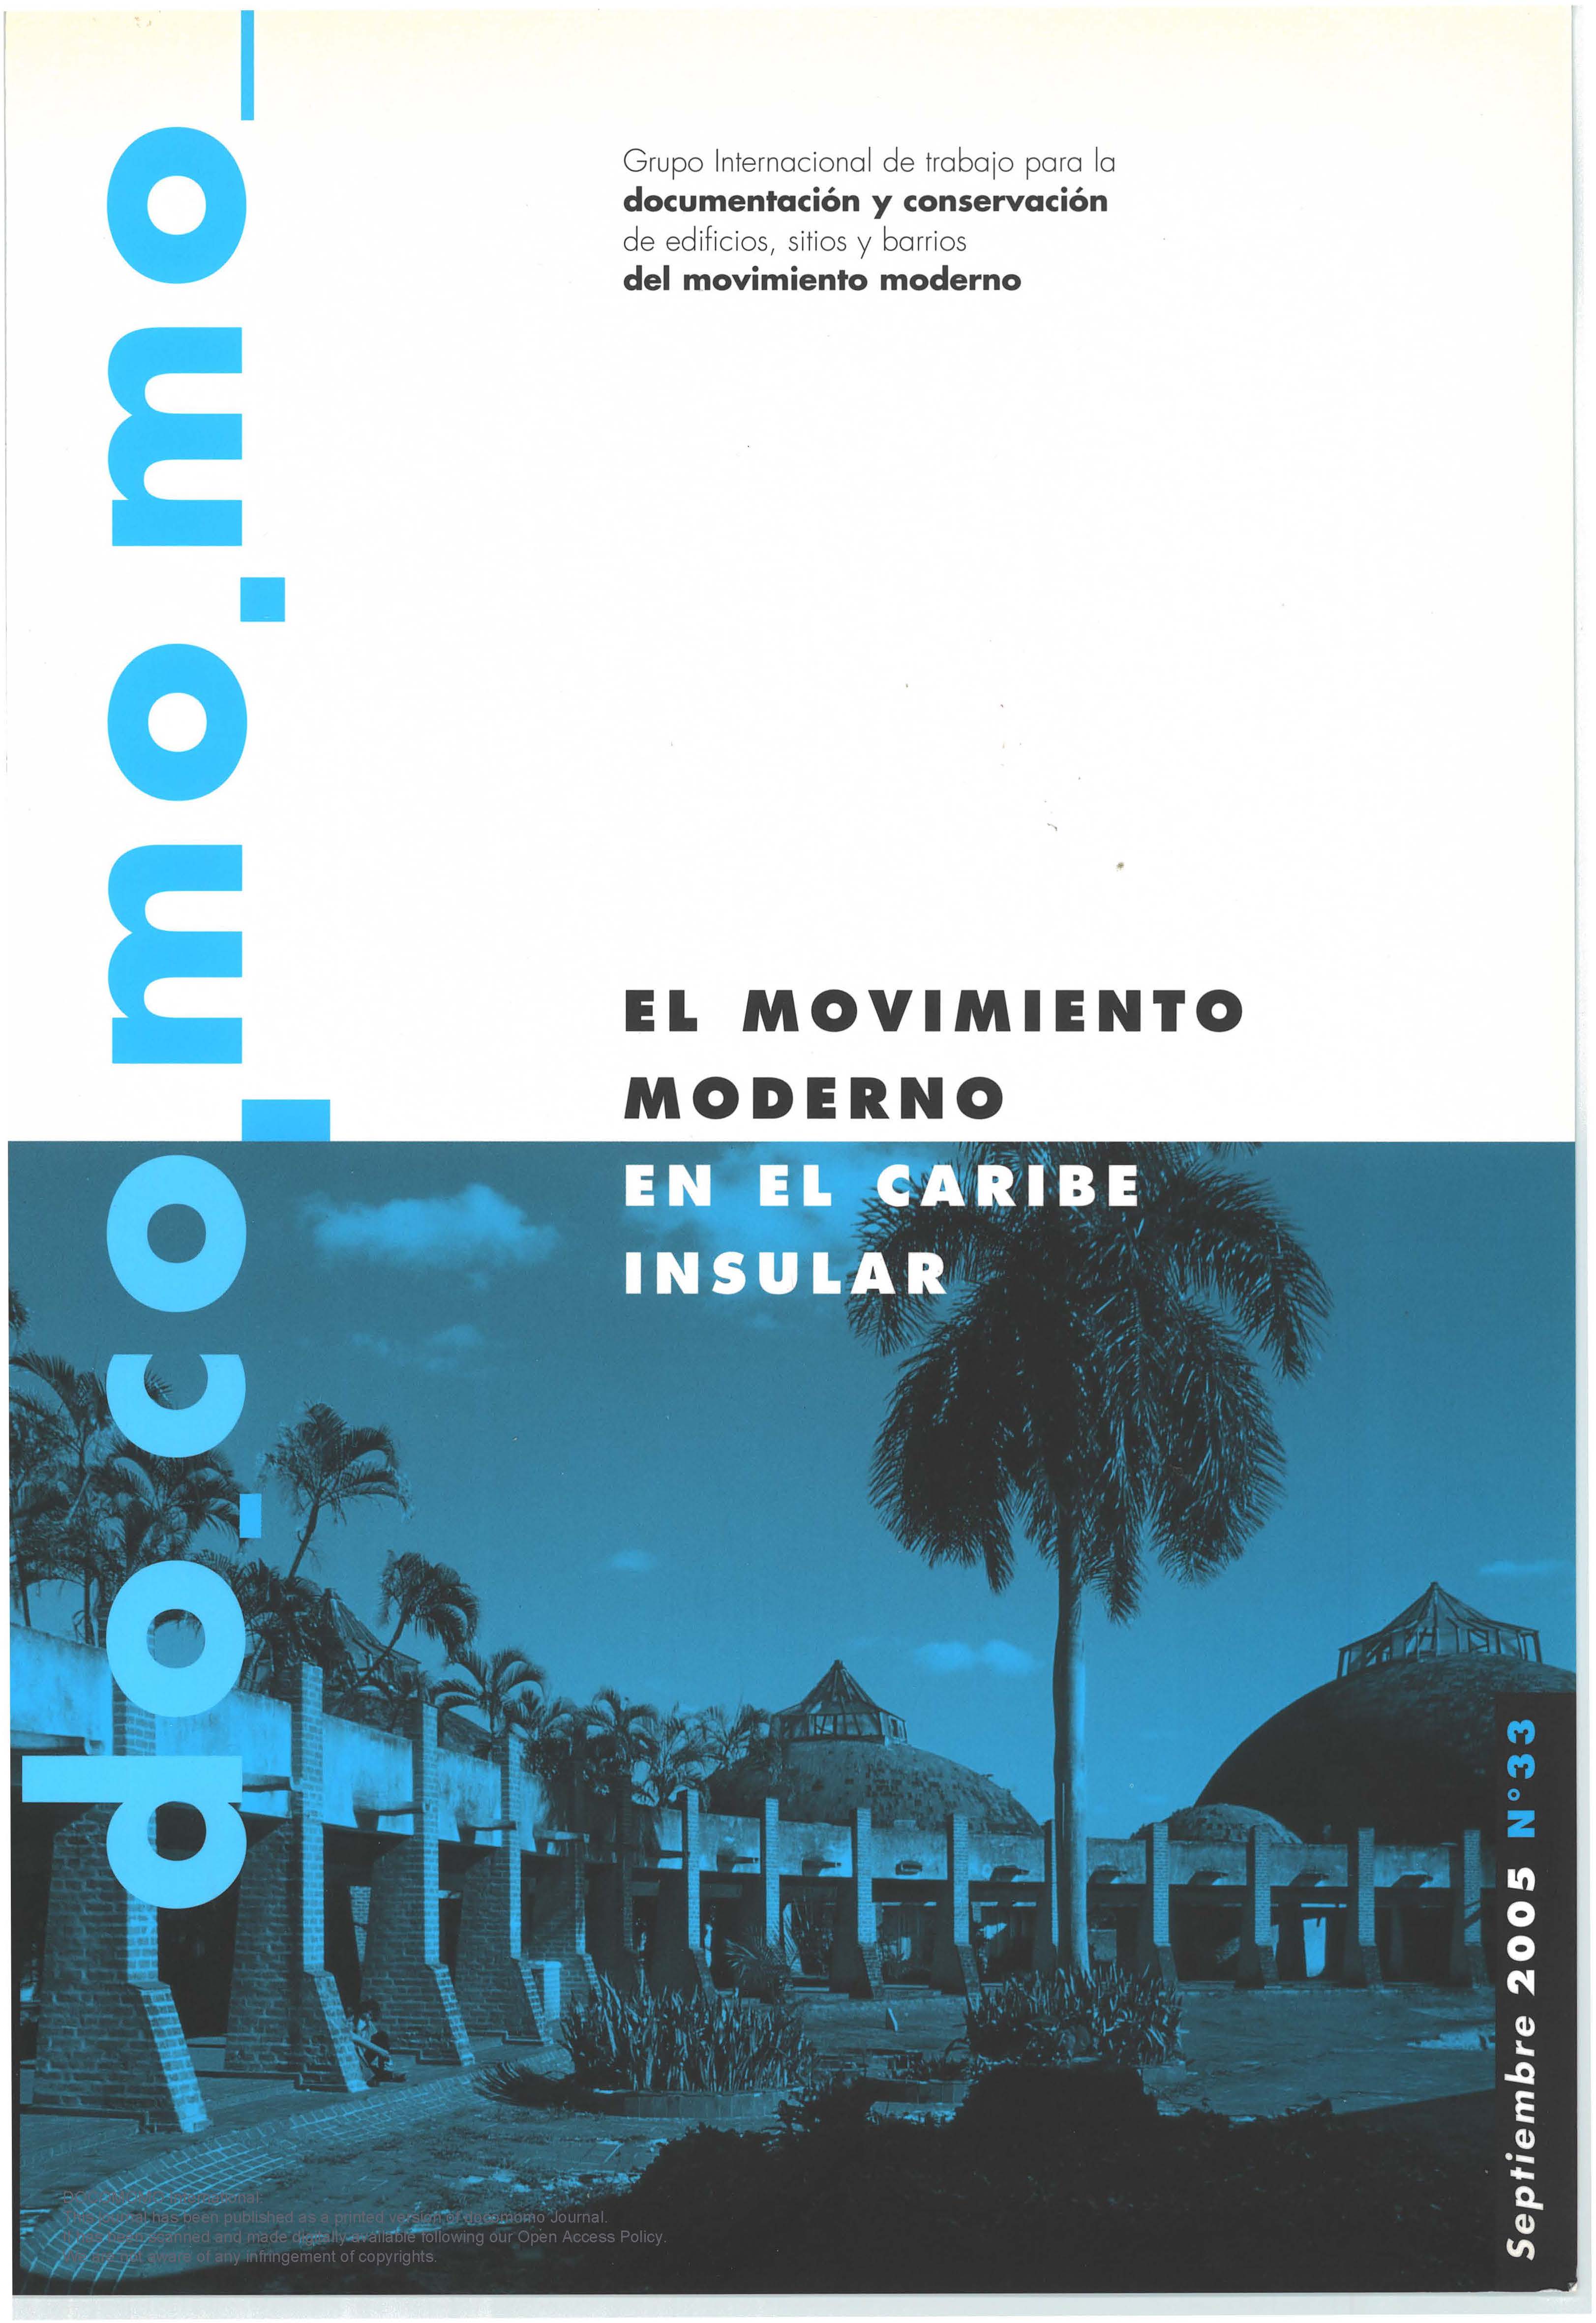 						View Vol. 2 No. 33 (2005): El Movimento Moderno En El Caribe Insular
					